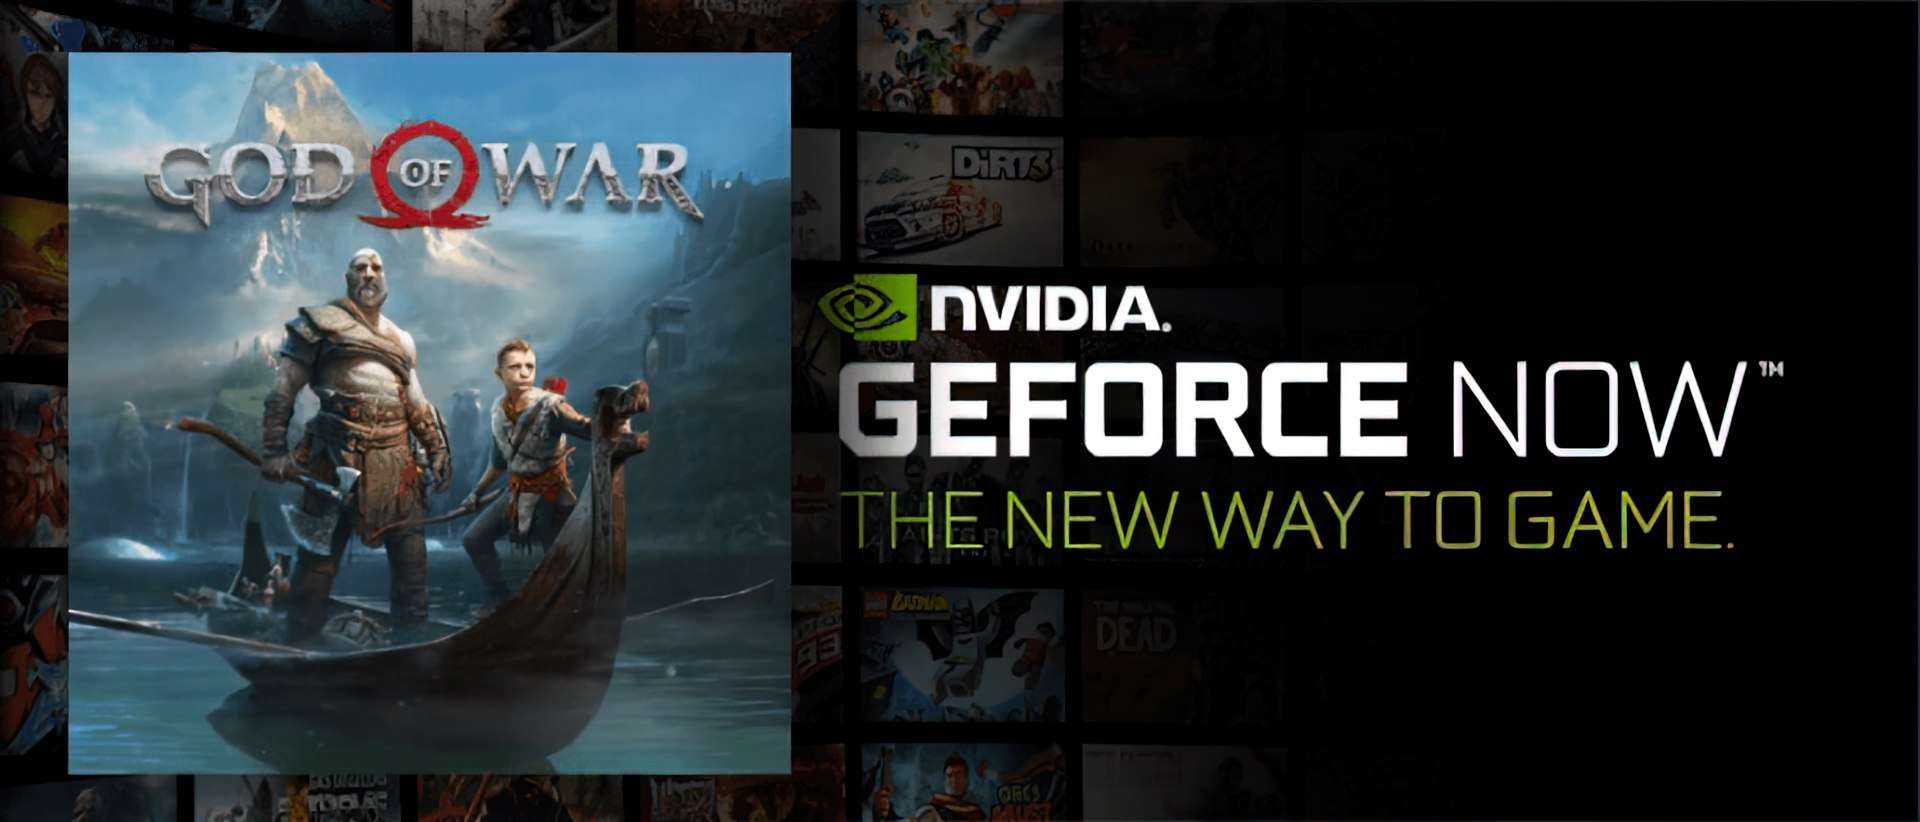 La perdita di Nvidia GeForce Now mostra che God of War sta arrivando sulla piattaforma